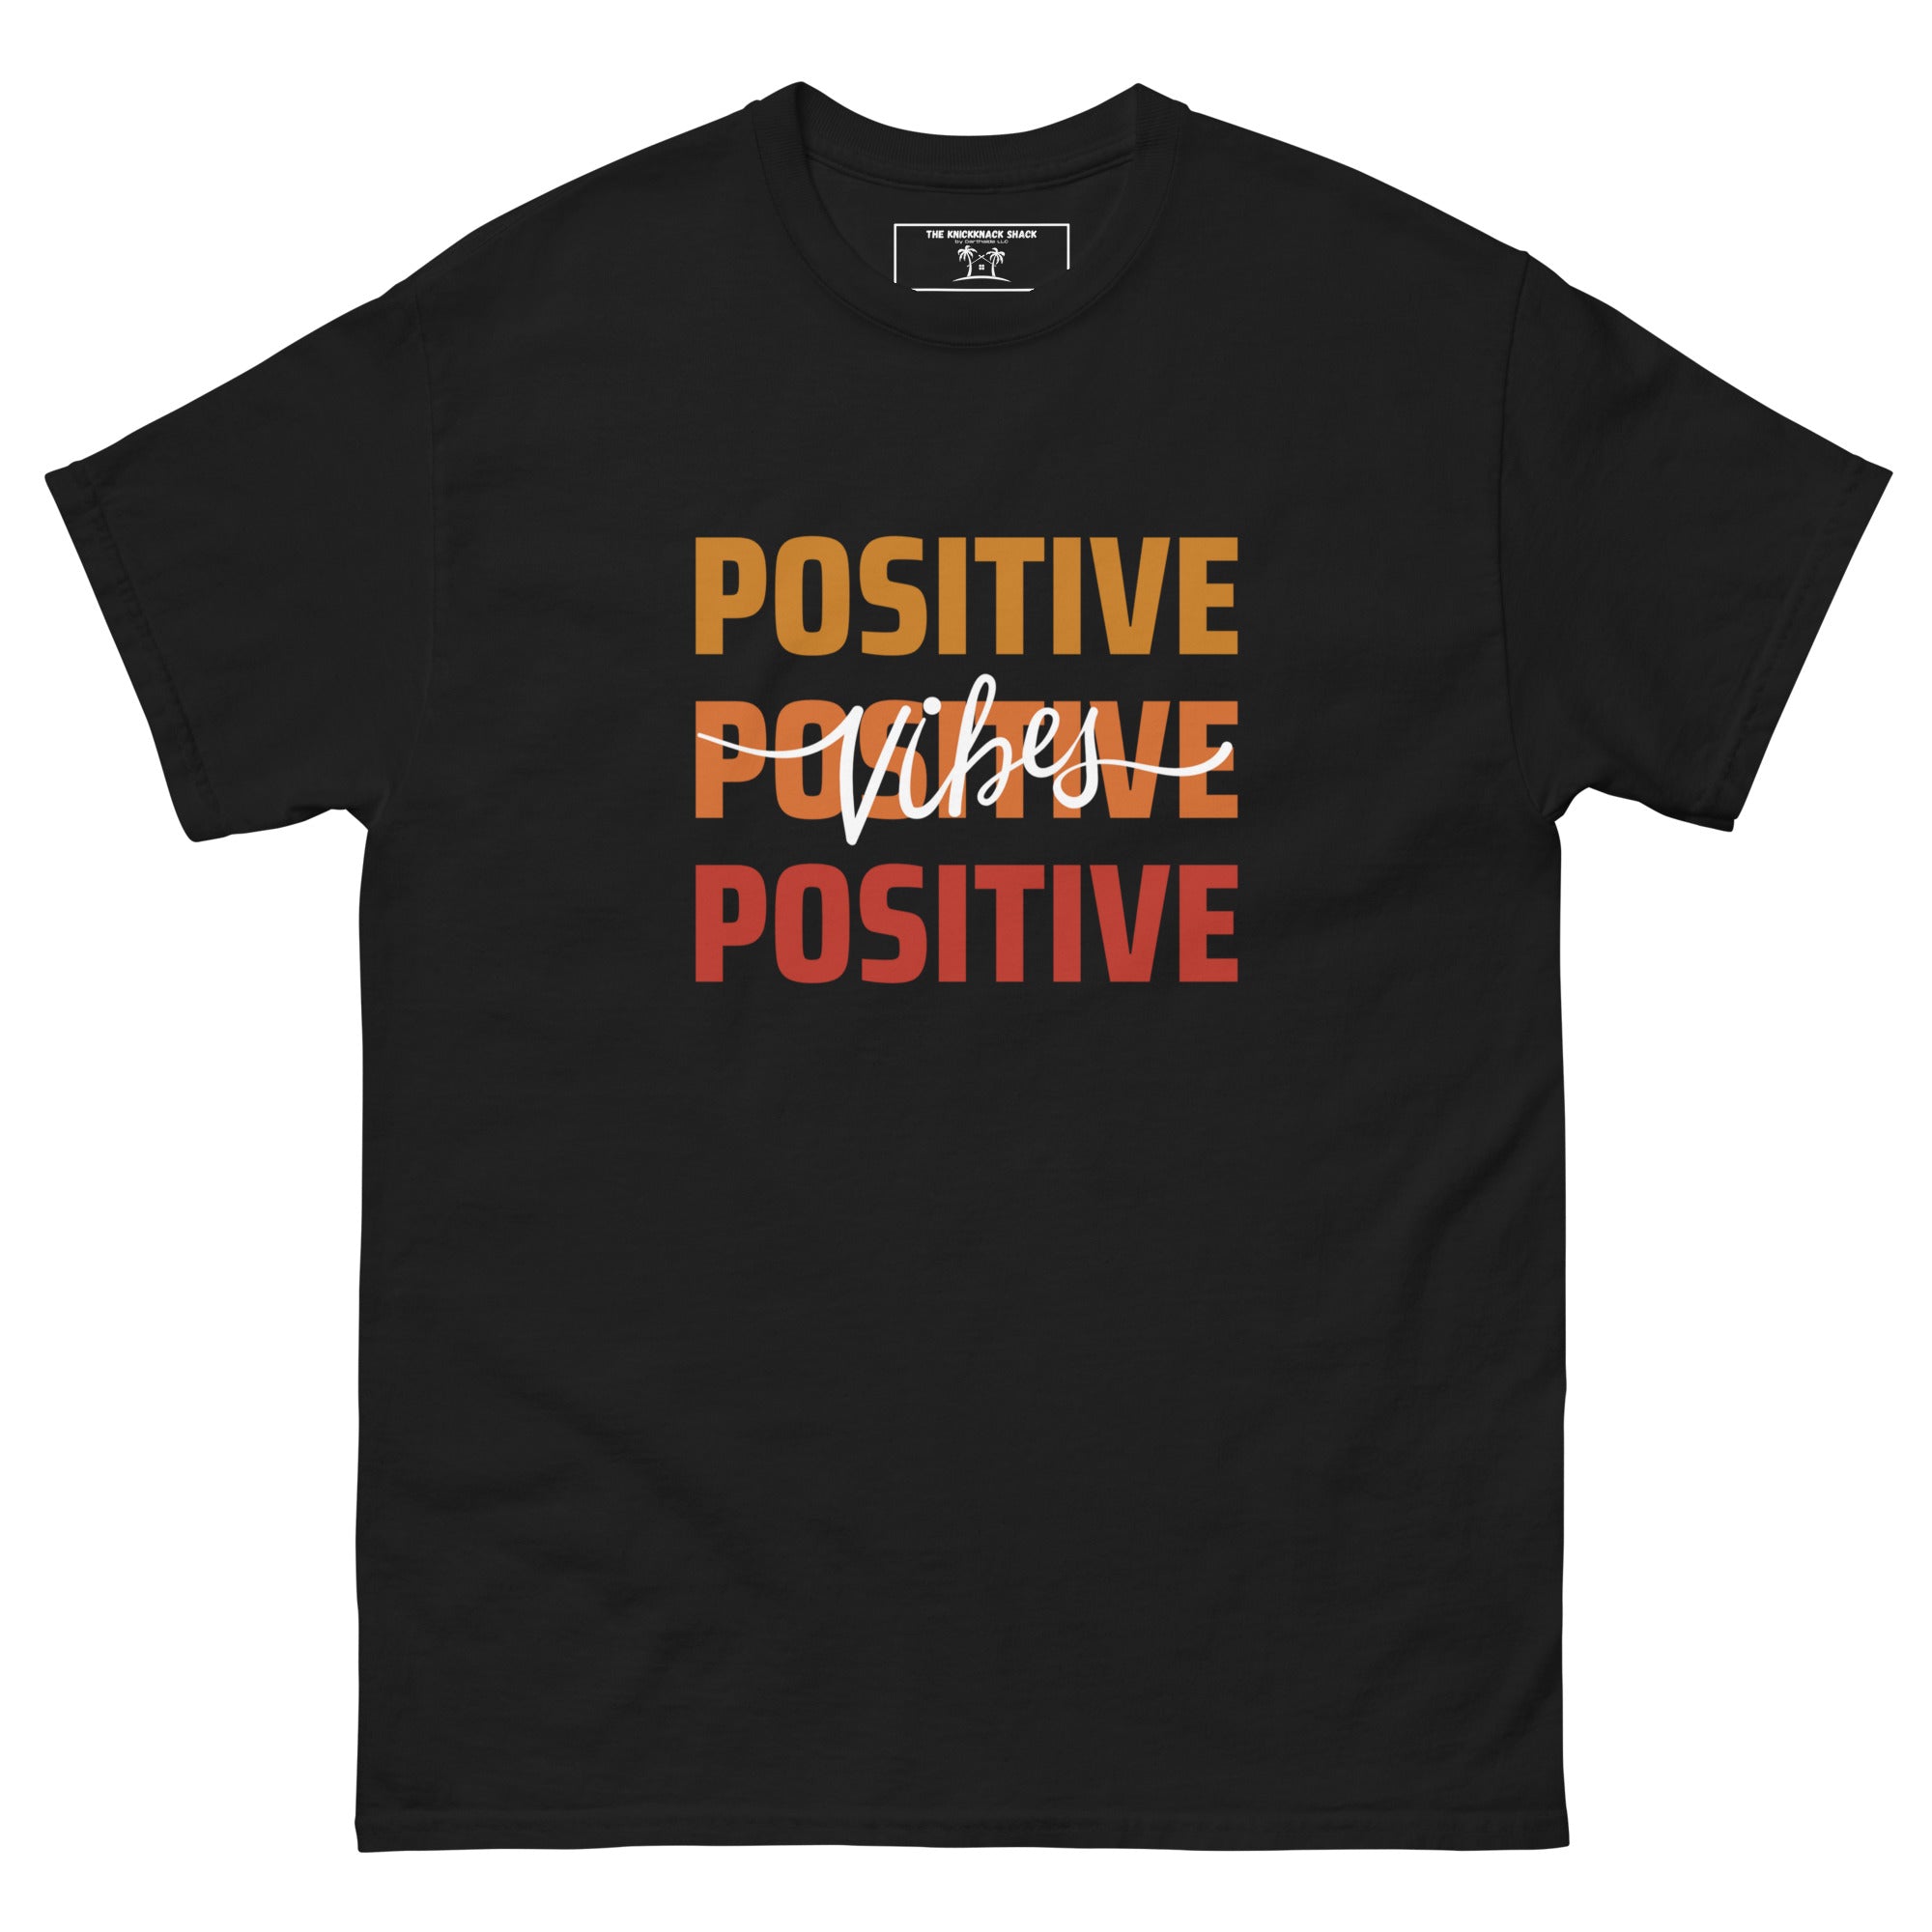 Tee-shirt classique - Positive Vibes (couleurs sombres)